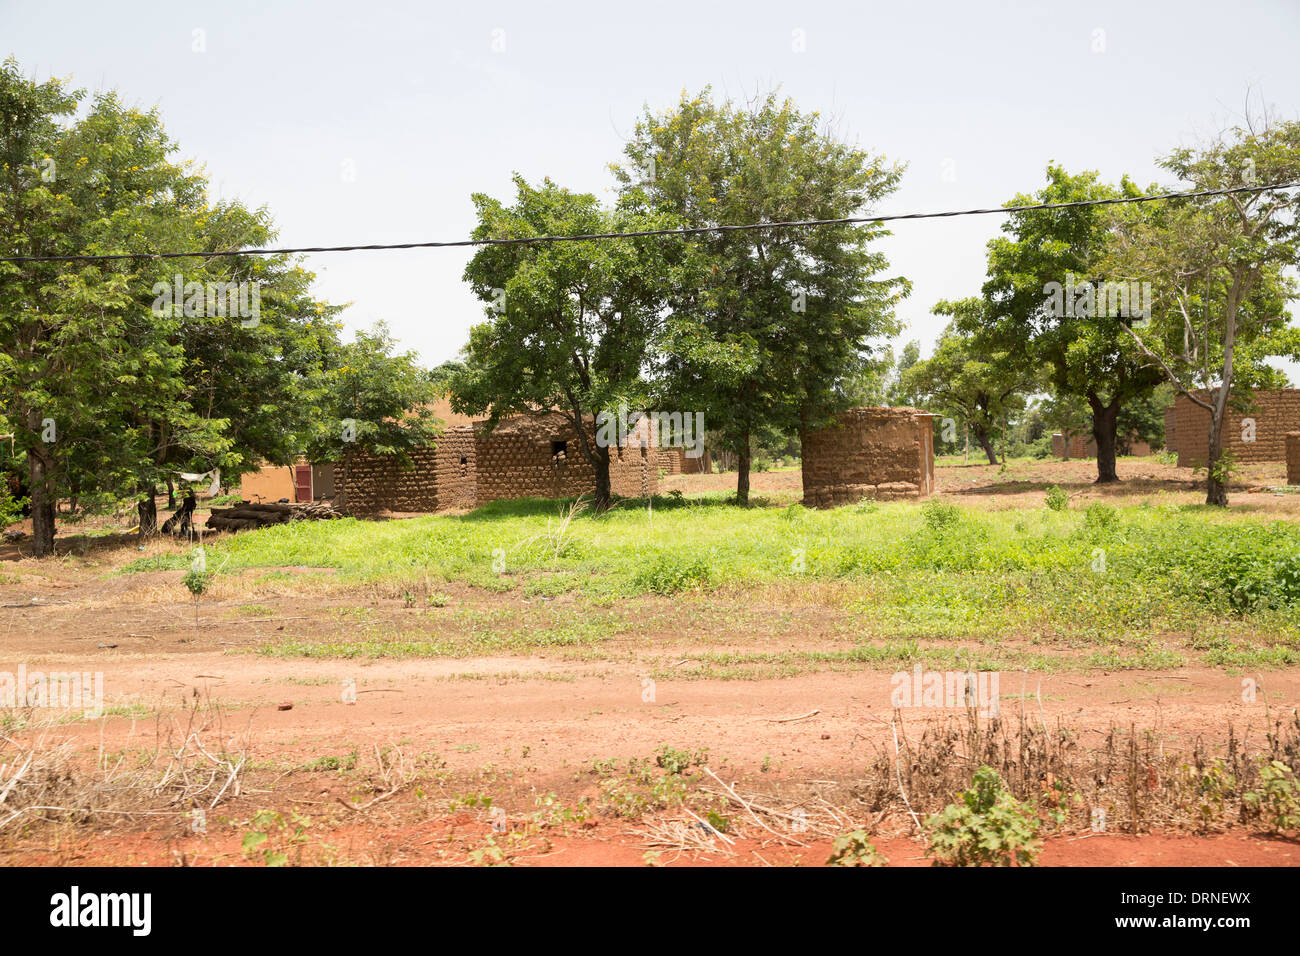 mud brick huts in Burkina Faso, Africa Stock Photo